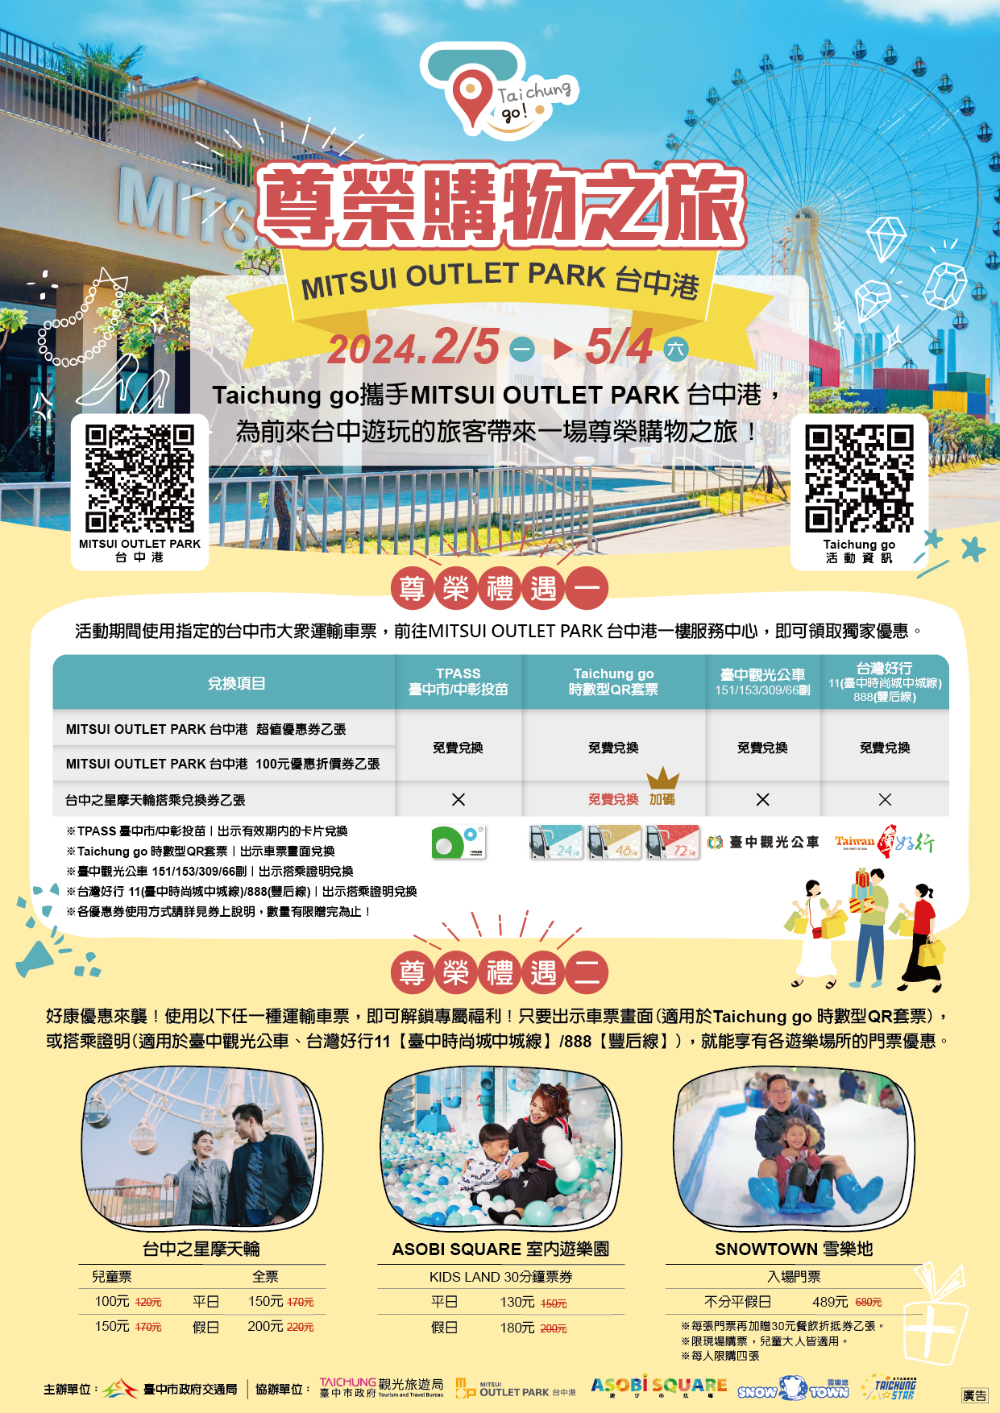 透過手機購買-taichung-go-時數型qr套票-即可無限次搭乘指定市公車路線與捷運.png